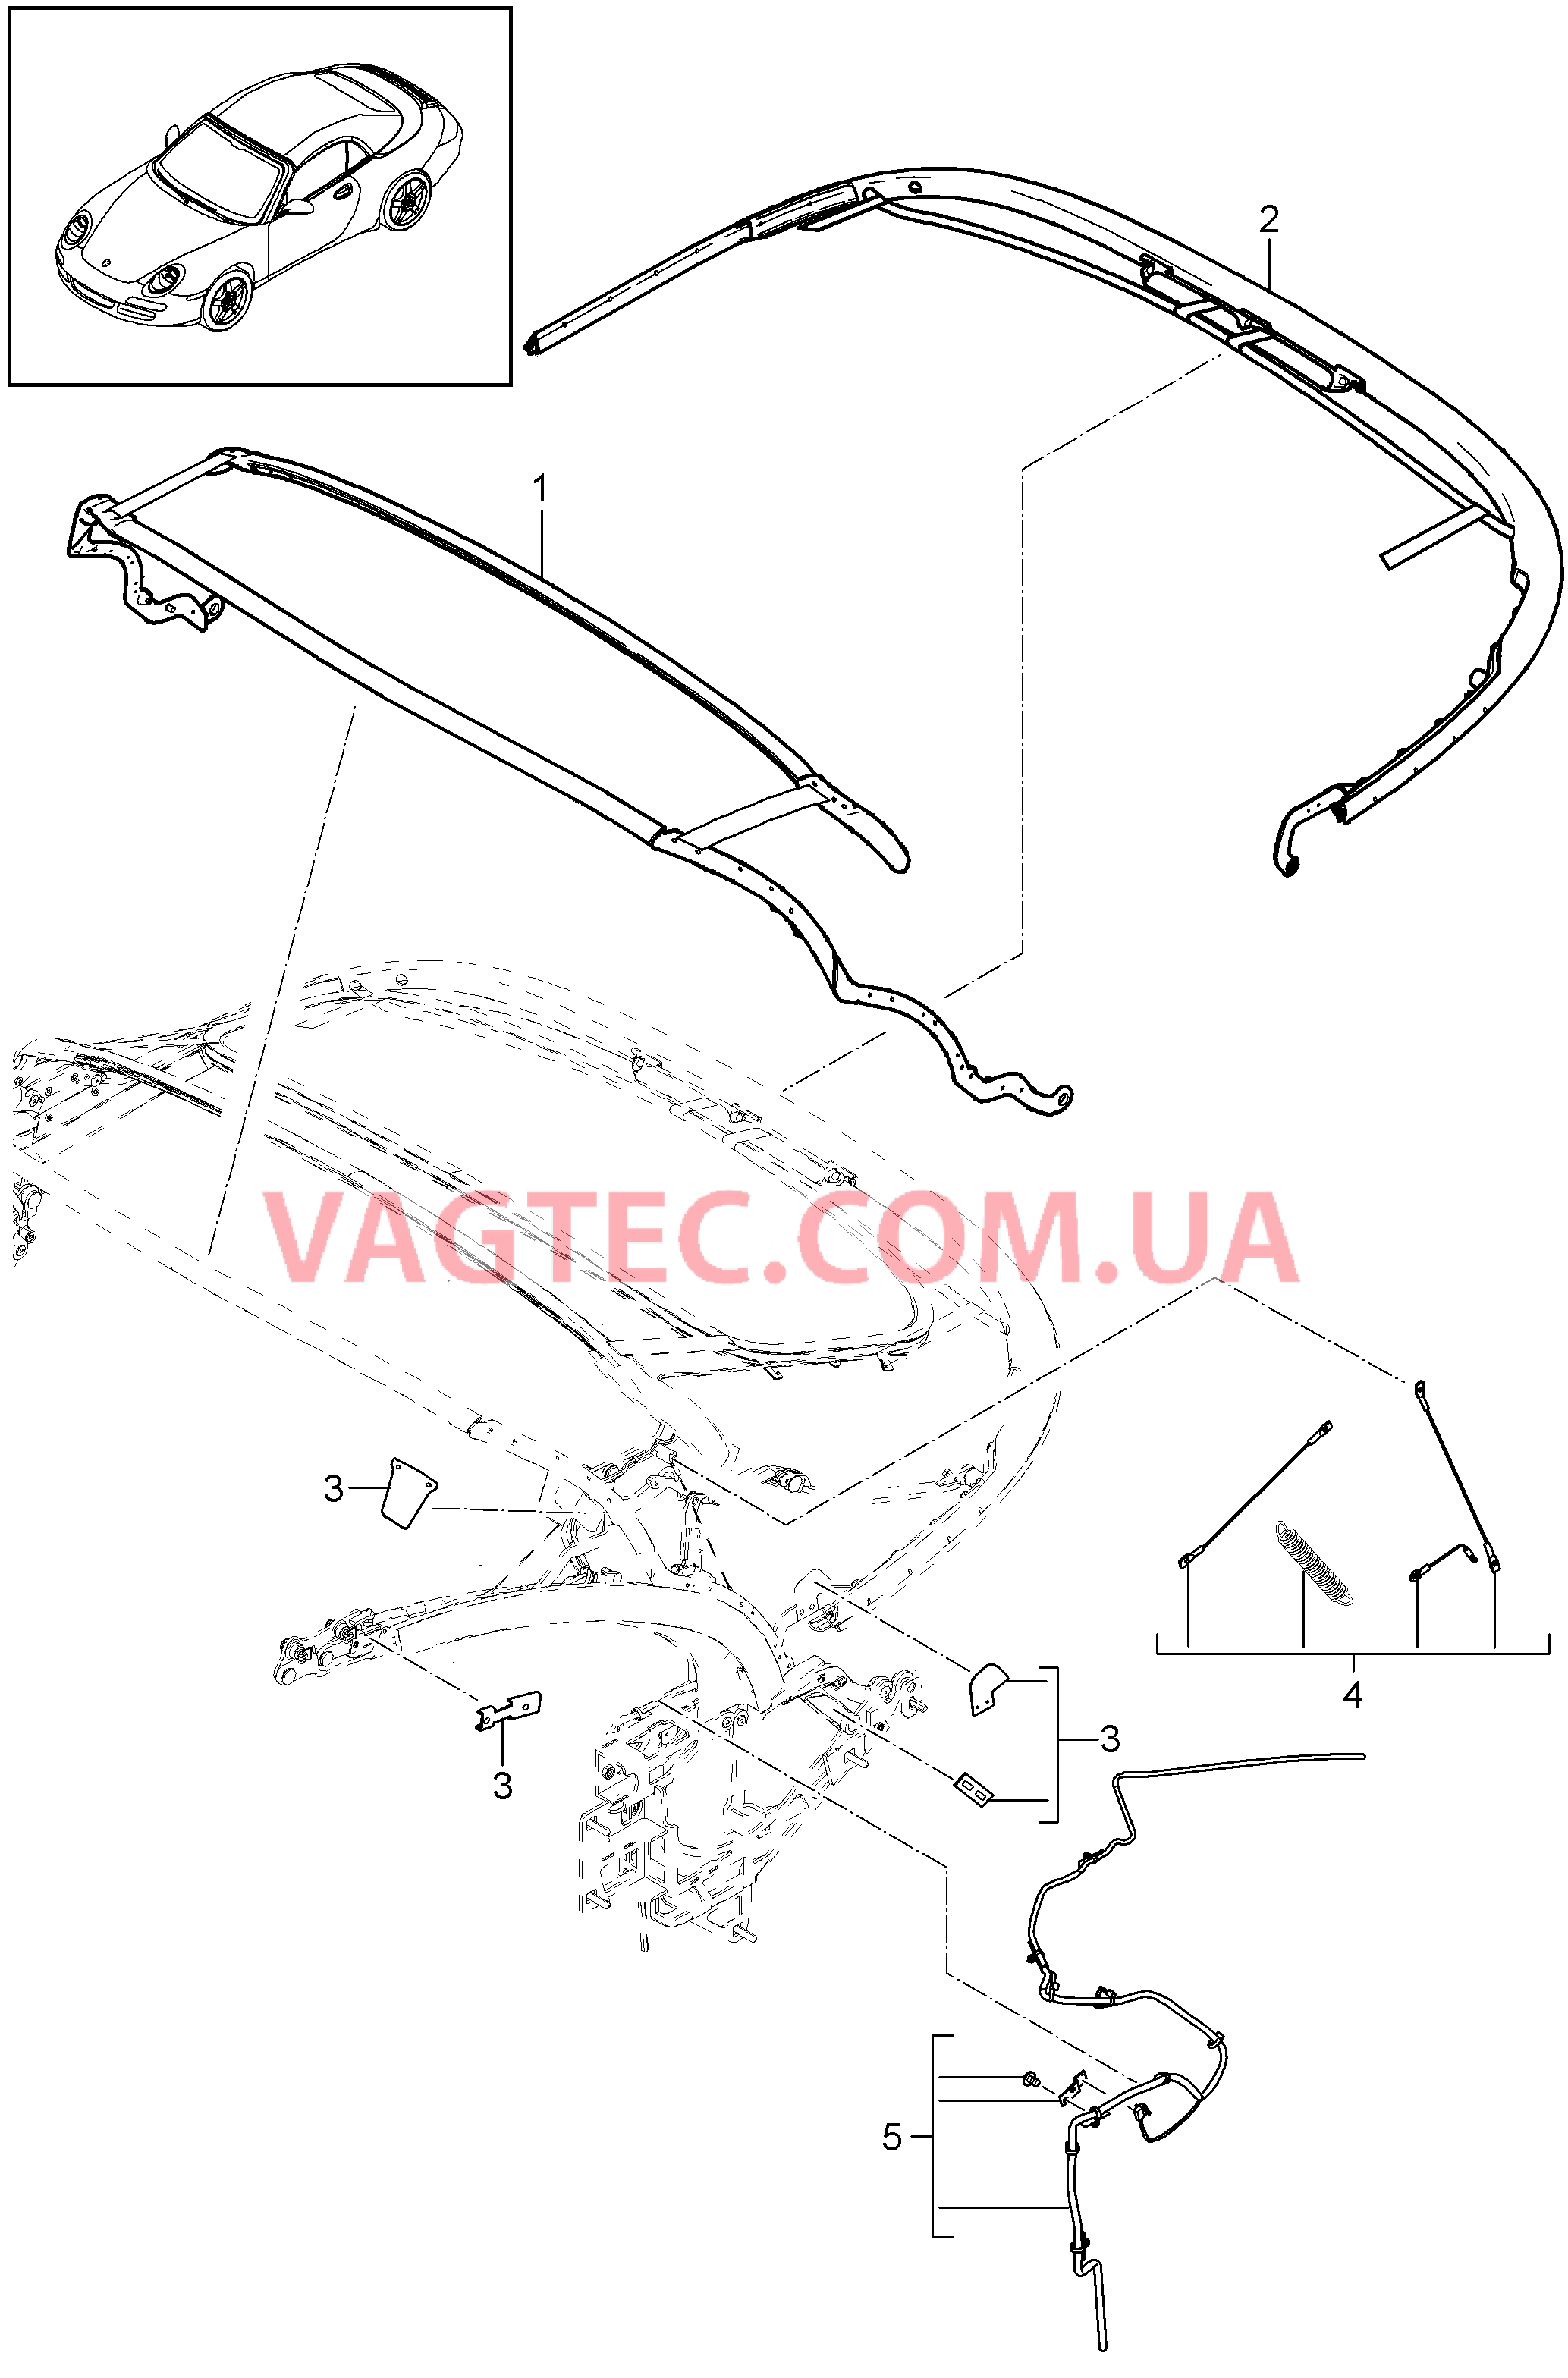 811-030 Каркас складного верха, Отдельные детали
						
						SPEEDSTER, I503 для PORSCHE 911.Carrera 2009-2012